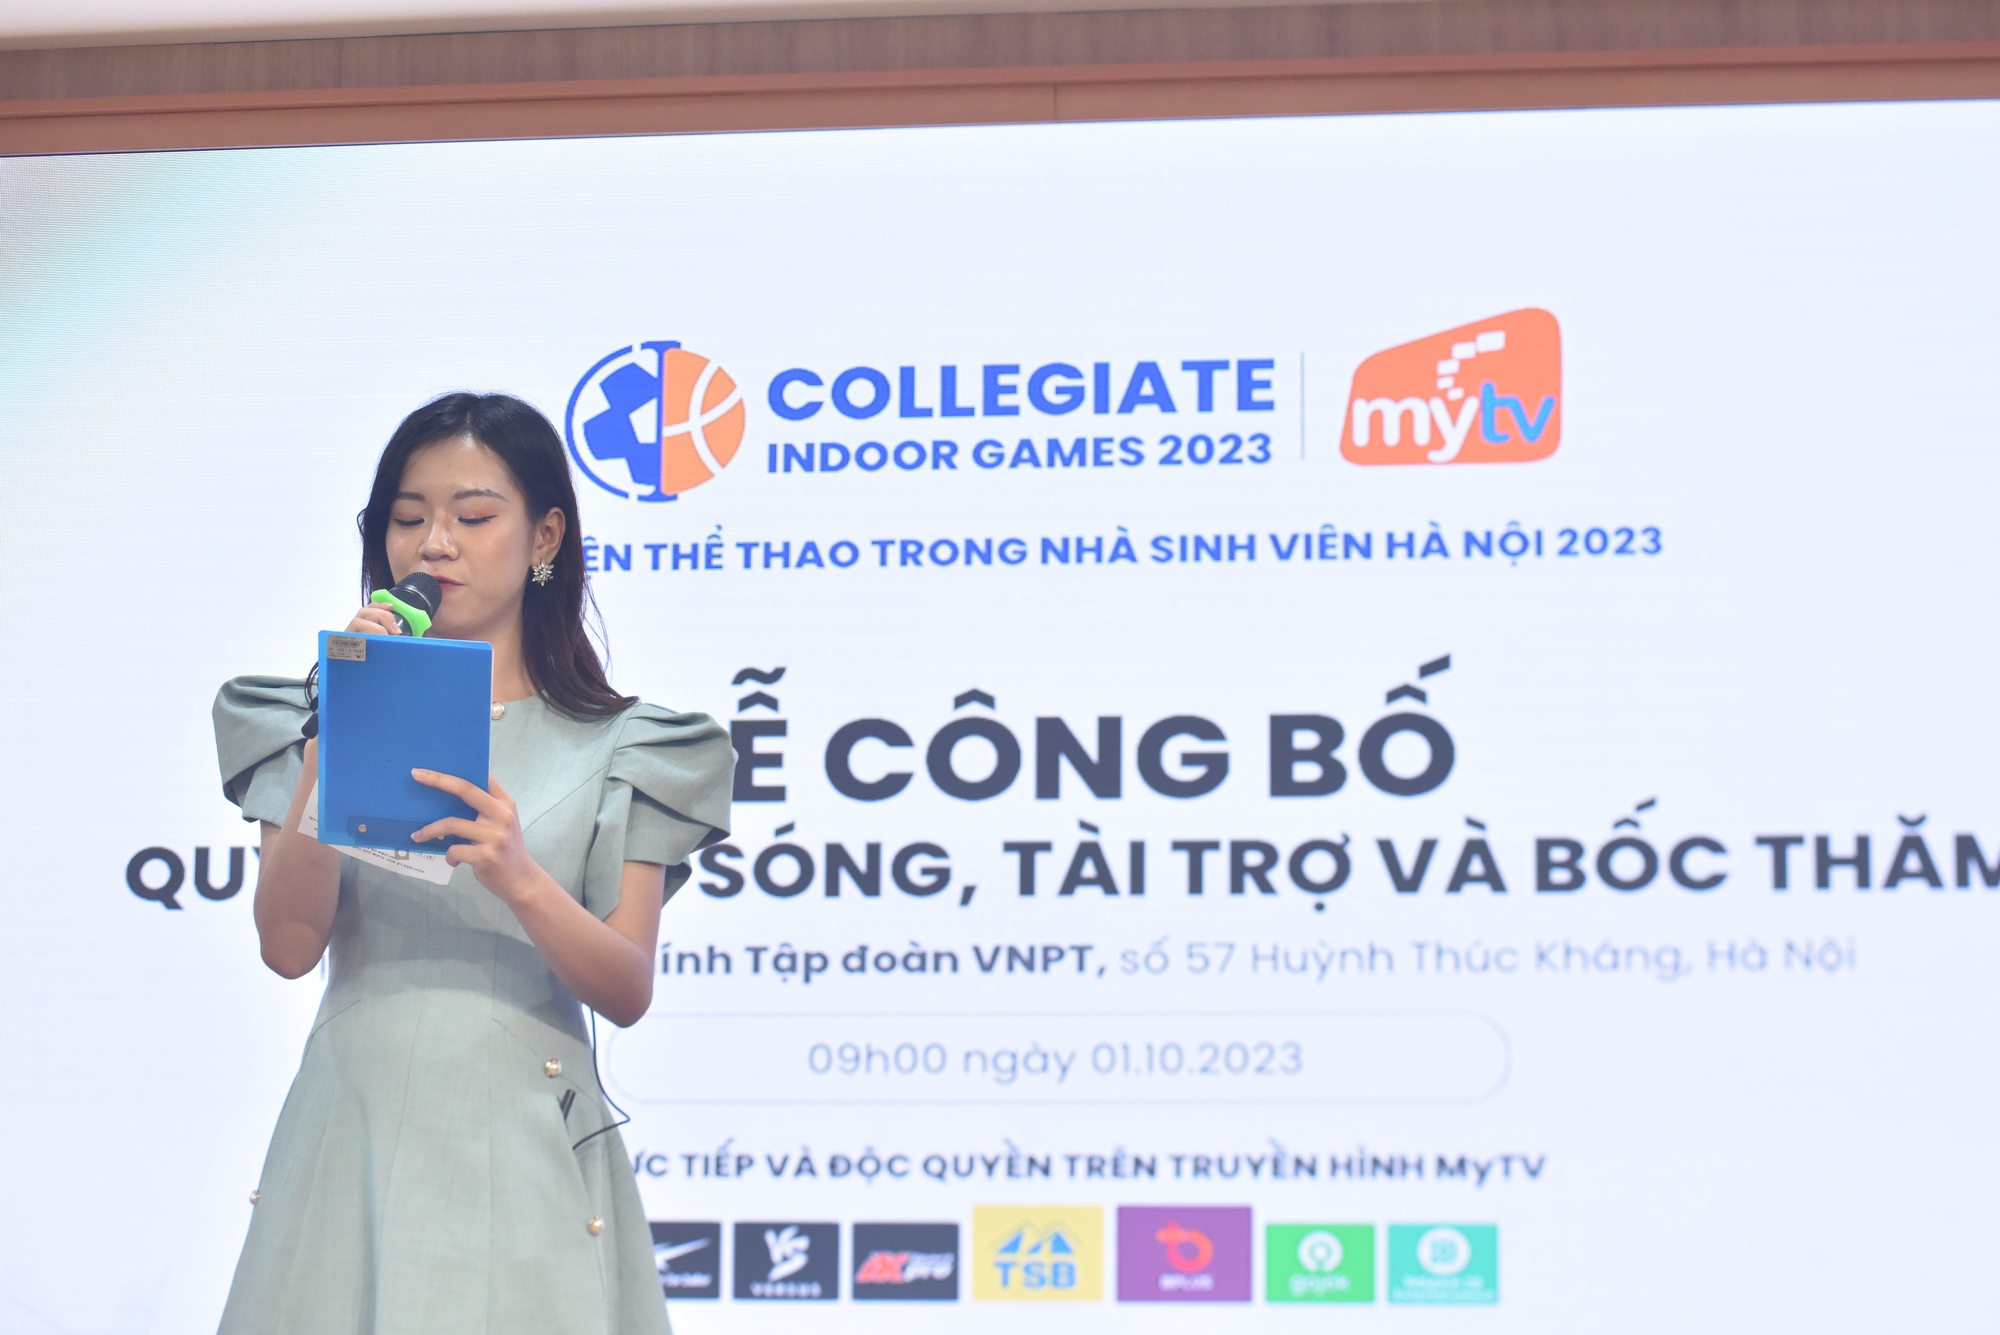 Sôi động ra mắt giải thể thao trong nhà dành cho sinh viên Hà Nội lần thứ nhất - Ảnh 1.